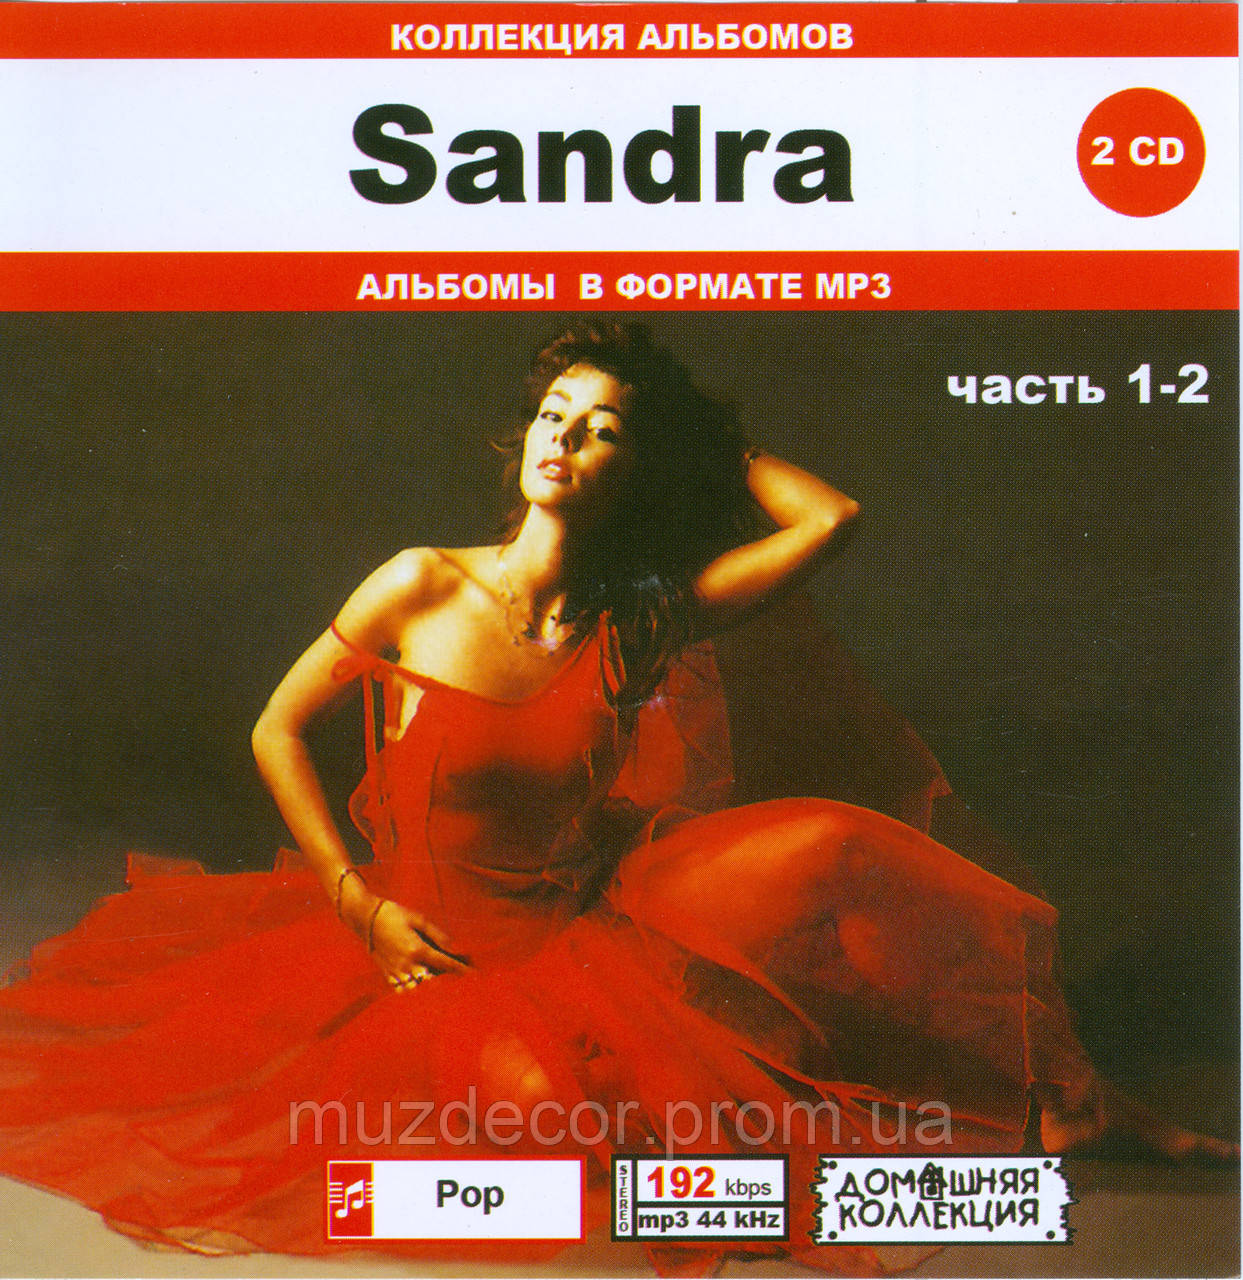 SANDRA MP3 2 CD — в Категории "Аудио/видео Продукция" на Bigl.ua  (1319645541)